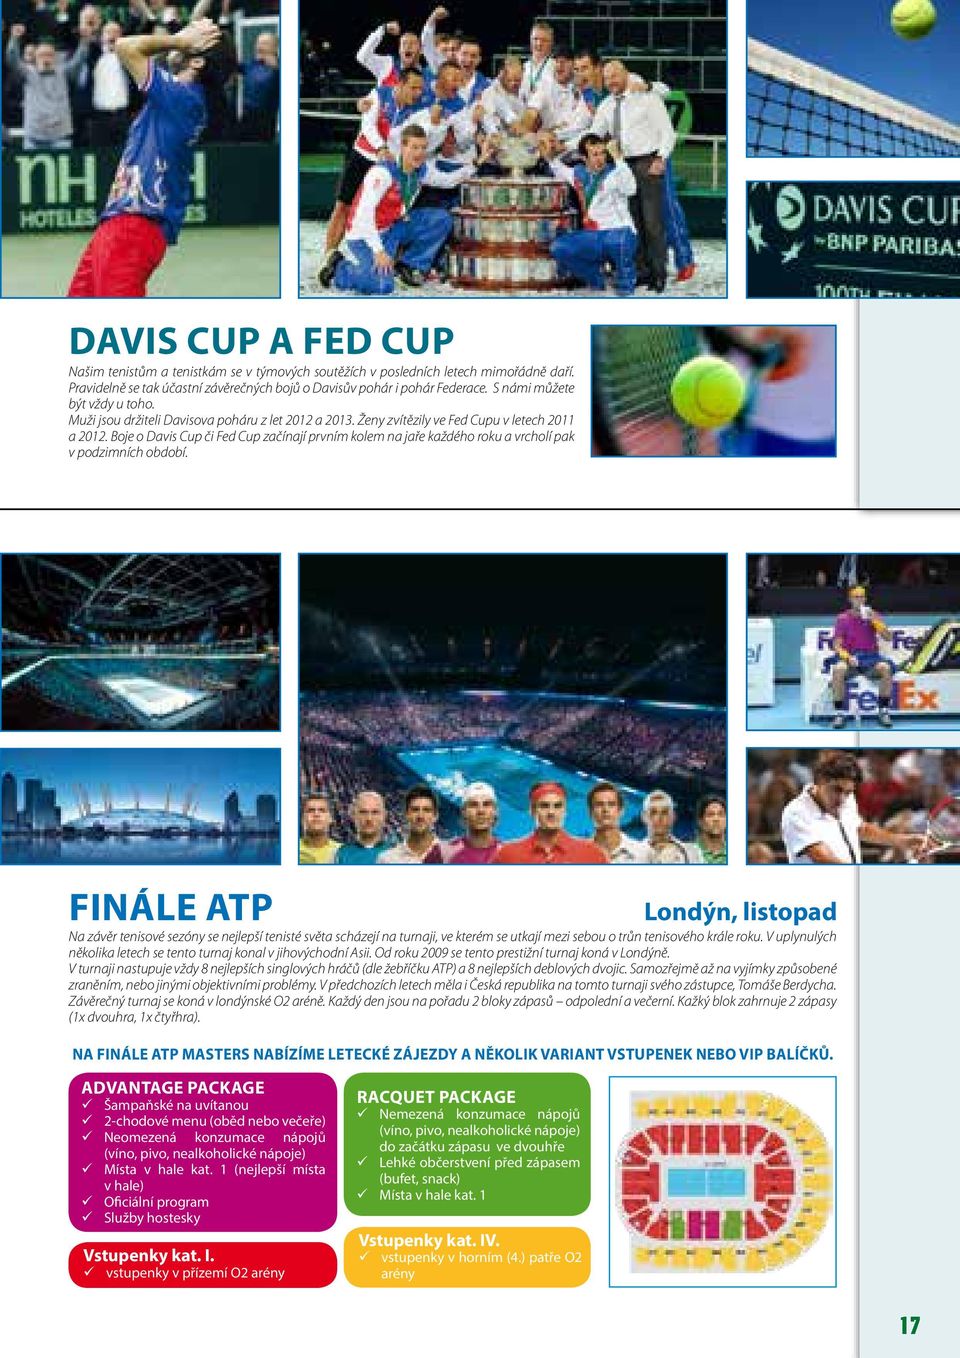 Boje o Davis Cup či Fed Cup začínají prvním kolem na jaře každého roku a vrcholí pak v podzimních období.